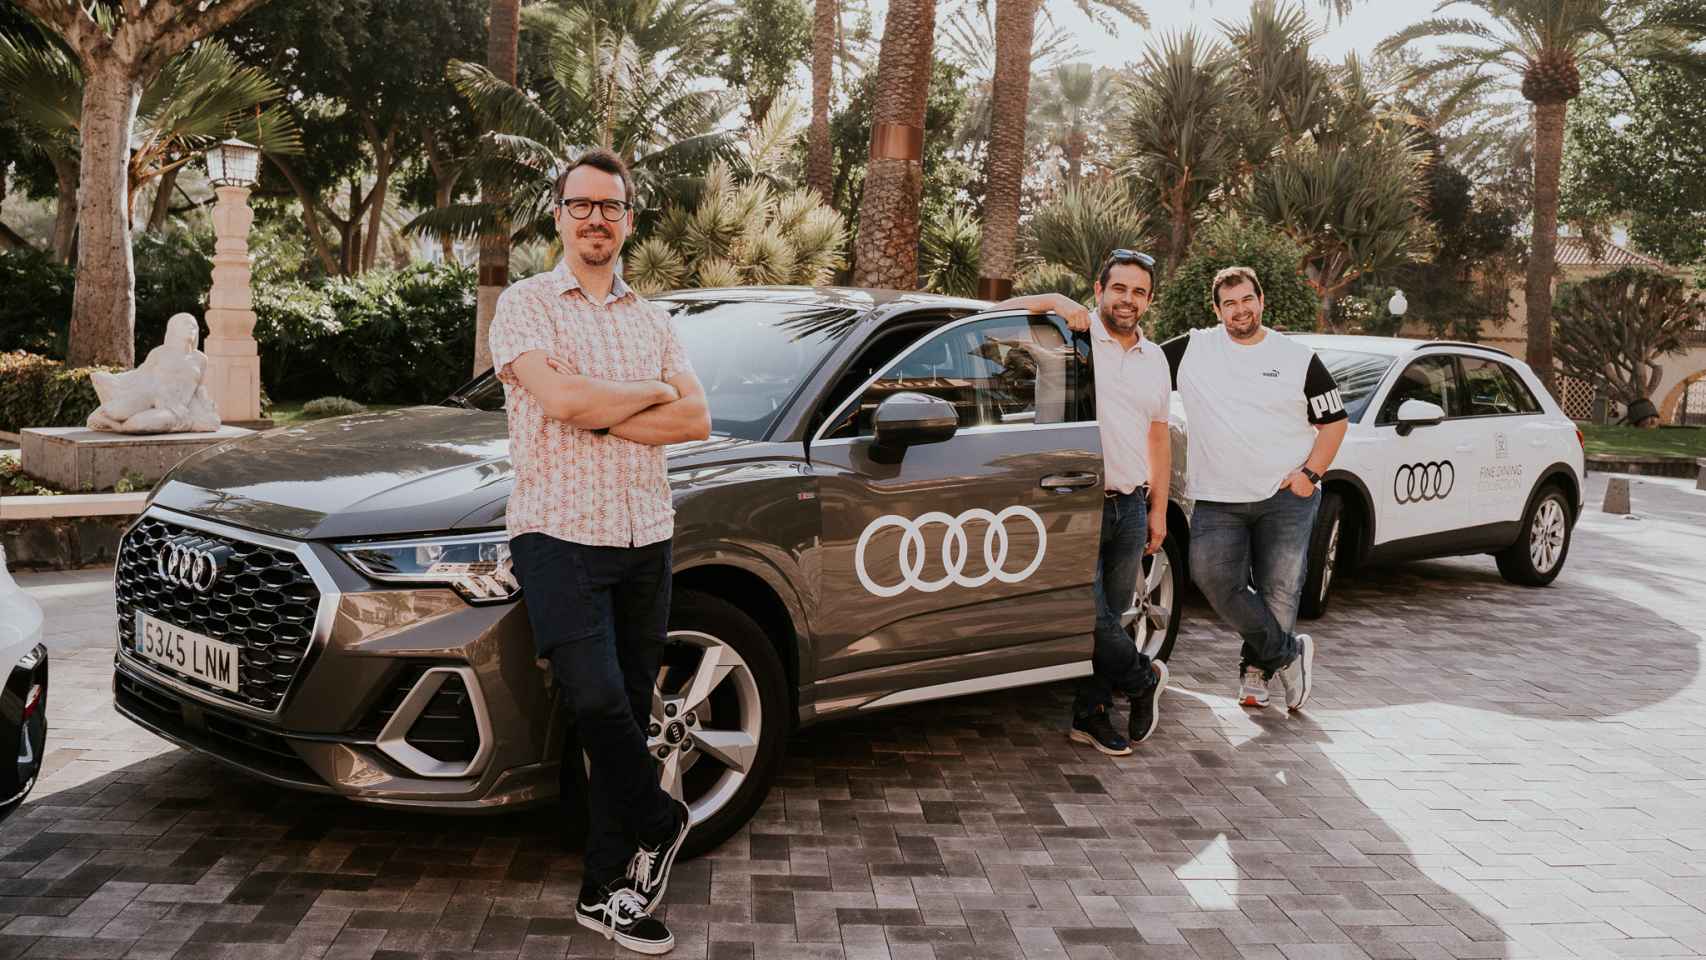 Paco Morales y los hermanos Padrón visitan los productos de Gran Canaria en un Audi